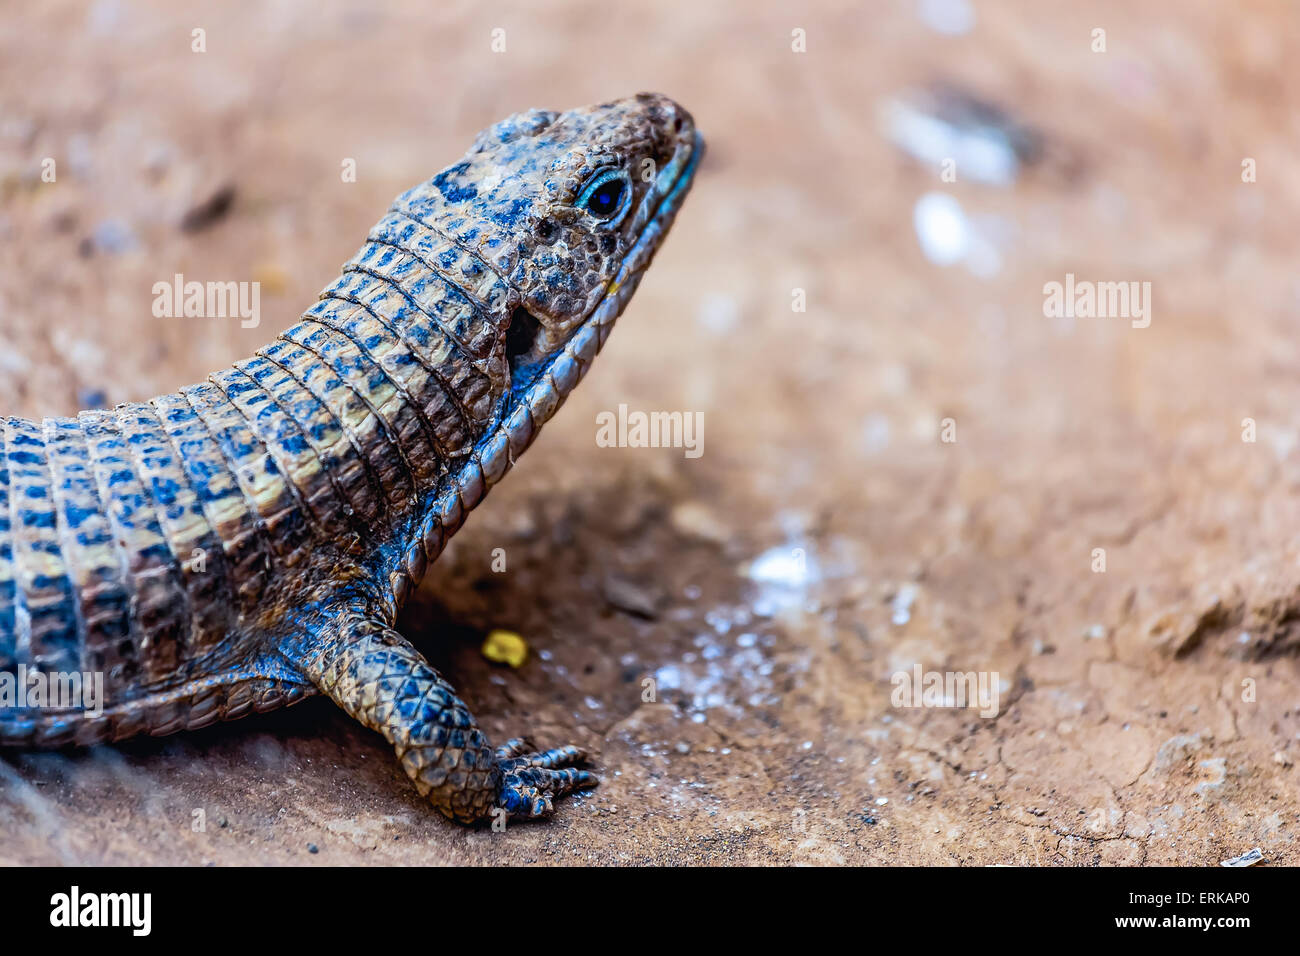 El lagarto o reptil lacertian sentado en el suelo Foto de stock